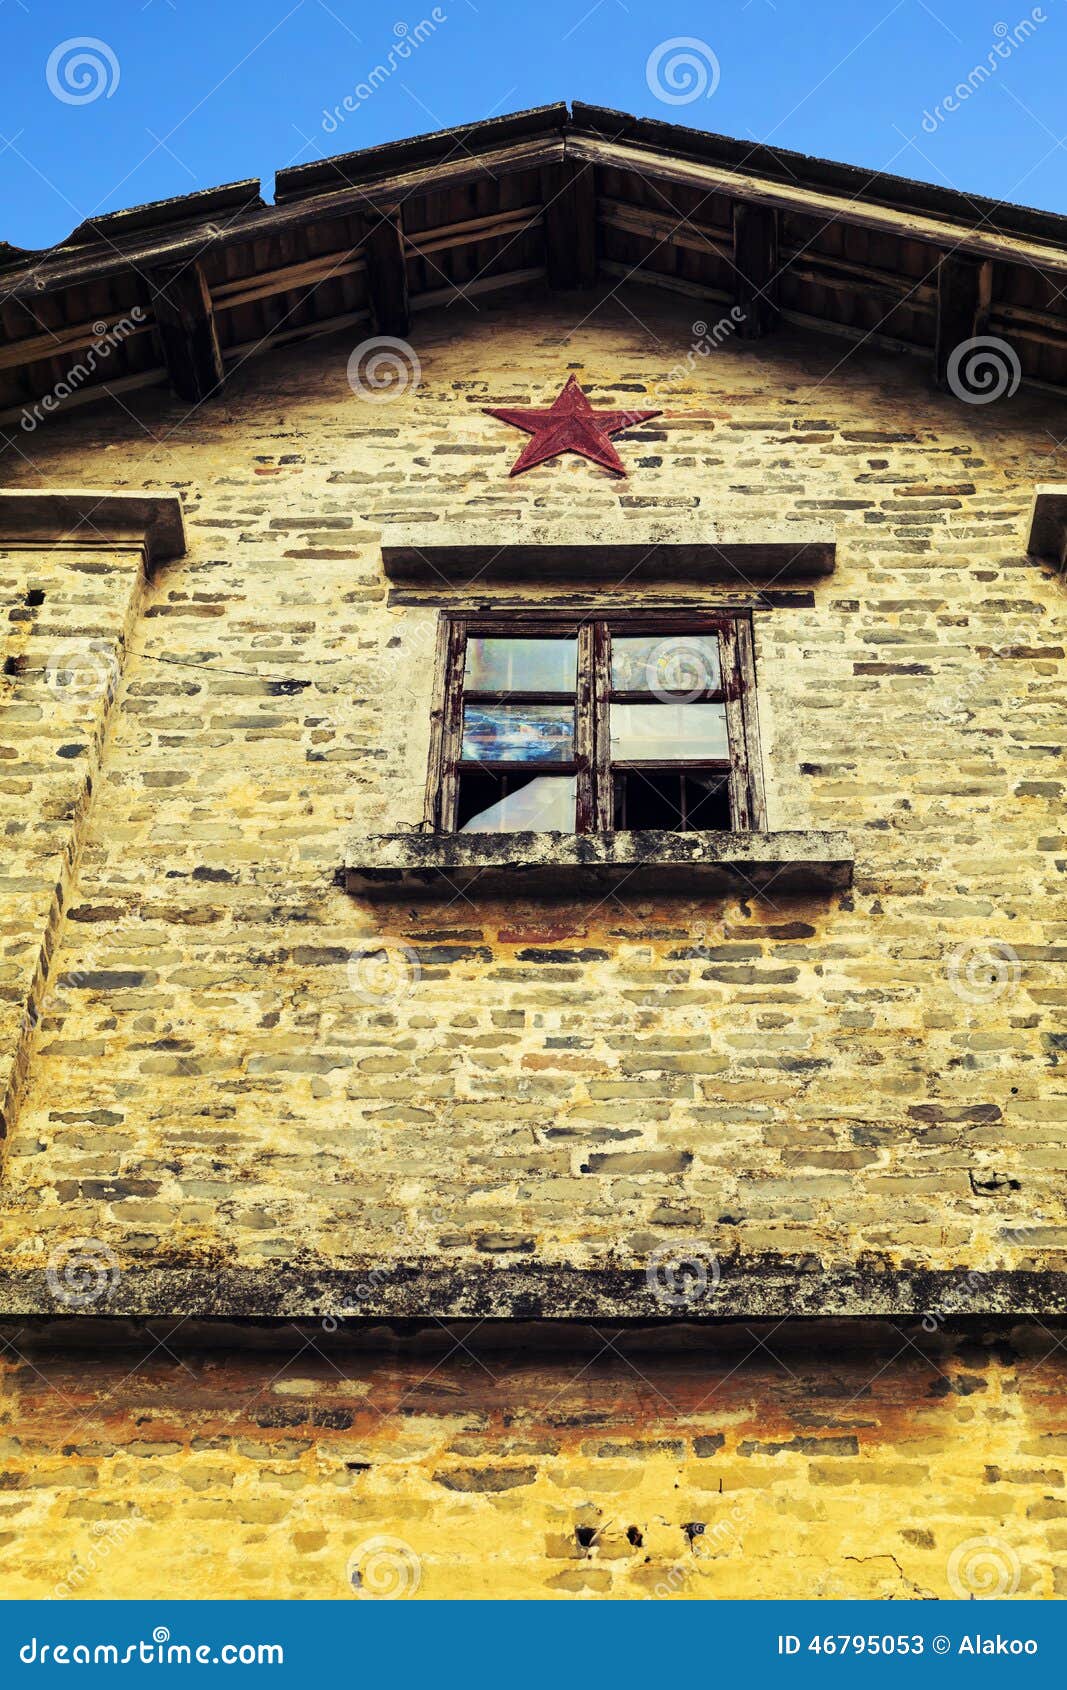 Τοίχος του σπιτιού με ένα σπασμένο παράθυρο, τοίχος του κτηρίου μείωσης ή φτωχό σπίτι. Ο παλαιός κίτρινος τουβλότοιχος του σπιτιού με ένα σπασμένο παράθυρο Ένας τοίχος του κτηρίου μείωσης ή του φτωχού σπιτιού με ένα pentagram ή αστέρι στην Κίνα Ίσως χτίζεται στο έτος της μεγάλης πολιτισμικής επανάστασης